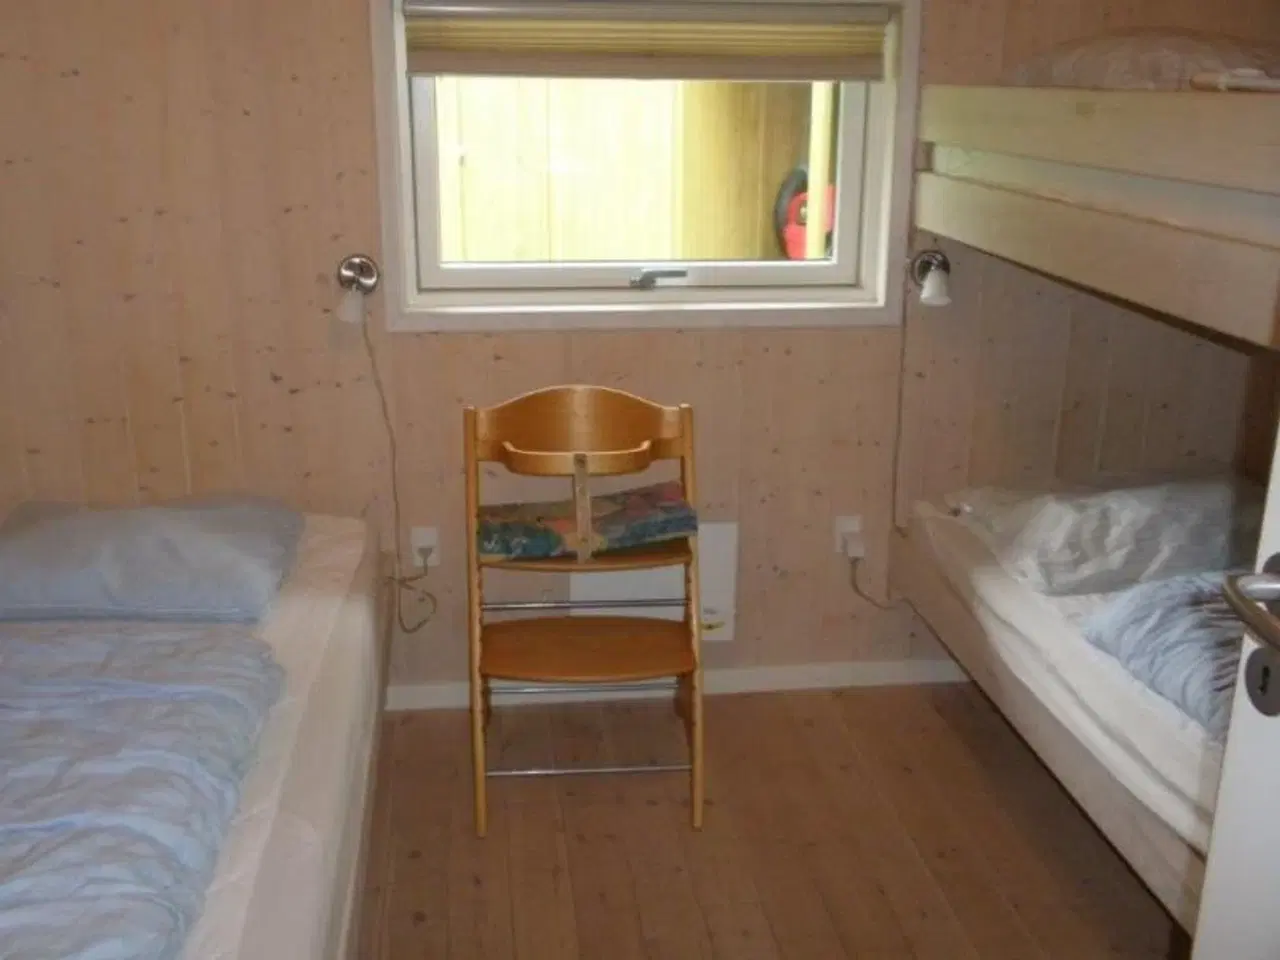 Billede 5 - Luksushus med spa, sauna. I hjertet af Arrildferieby. Sommerhus kun 200m til badeland med fri entre. Og 200m til fiskesø